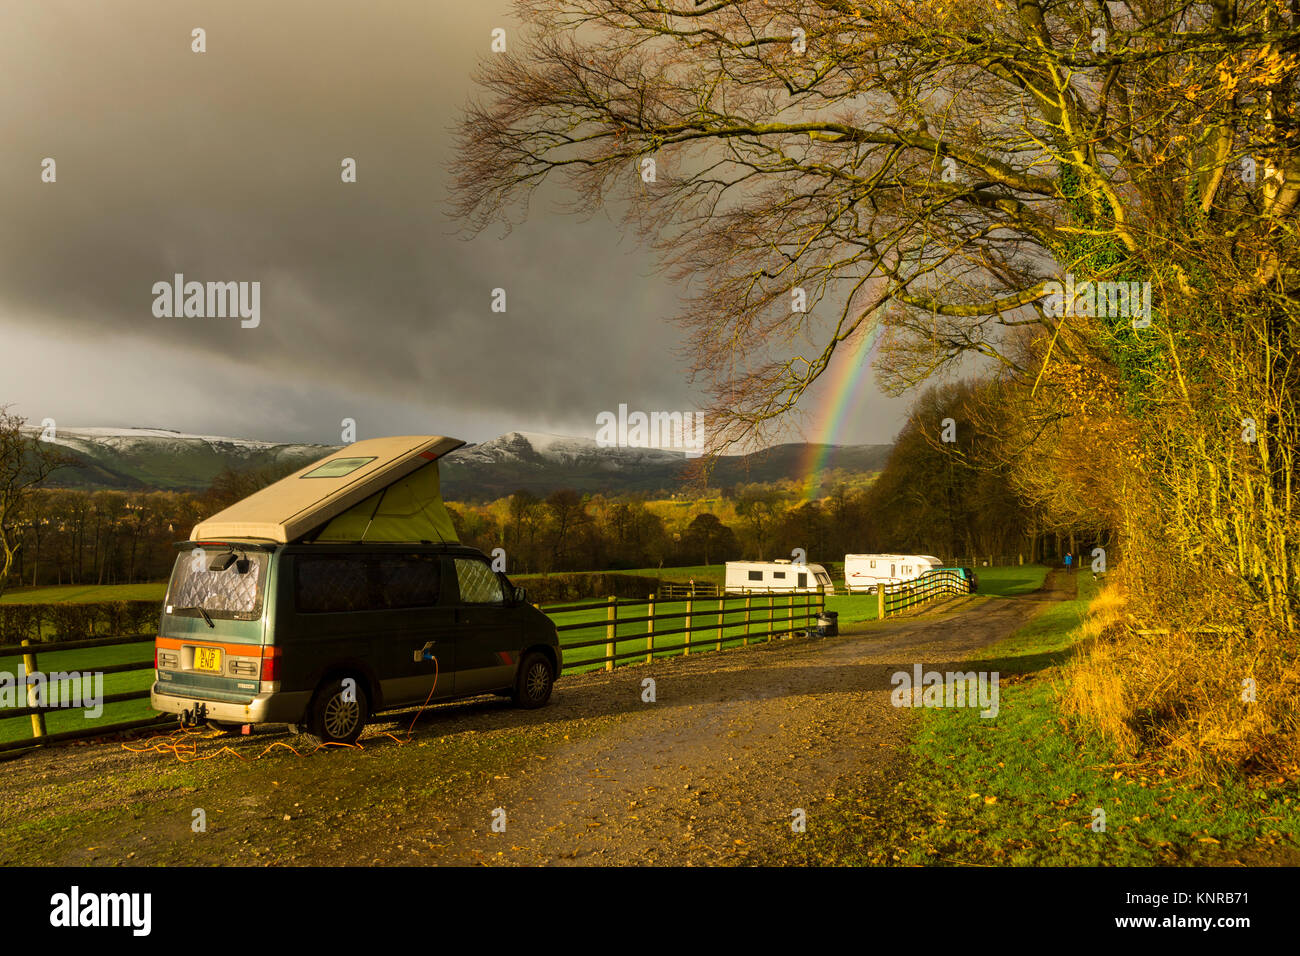 Un campervan Mazda Bongo dans un petit camping site à Farfield Farm, près de Hope village, Peak District, Derbyshire, Angleterre, Royaume-Uni. Mam Tor dans la distance. Banque D'Images